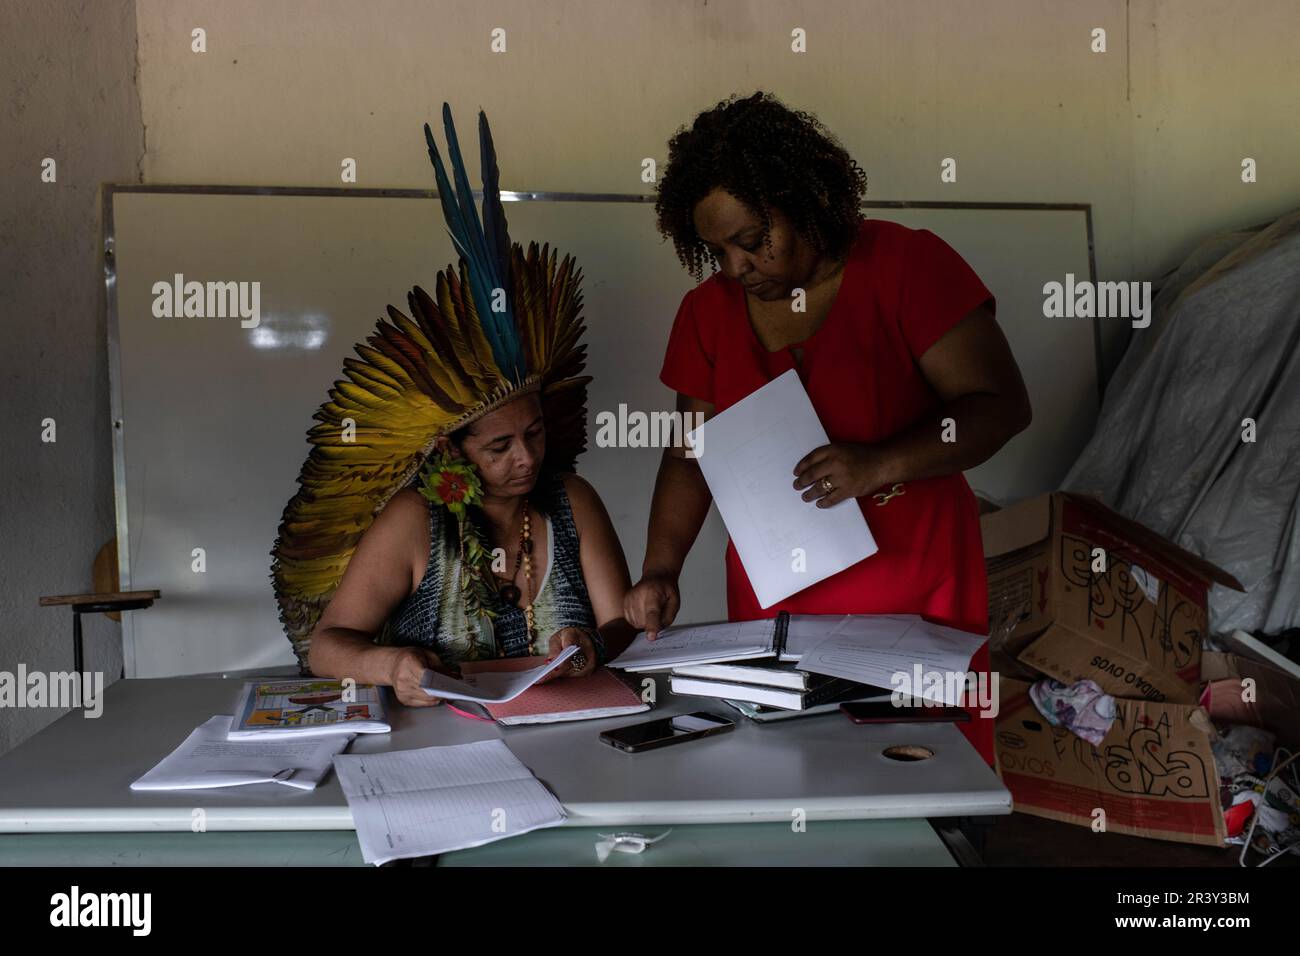 Chief Ãngohó Pataxó, indigenous community leader, speaks with Dra Alessandra Vilaça, lawyer of Associação Indígena do Povo Katurãma (AIKA) during a meeting, at the Aldeia Katurãma, São Joaquim de Bicas, Minas Gerais. Stock Photo